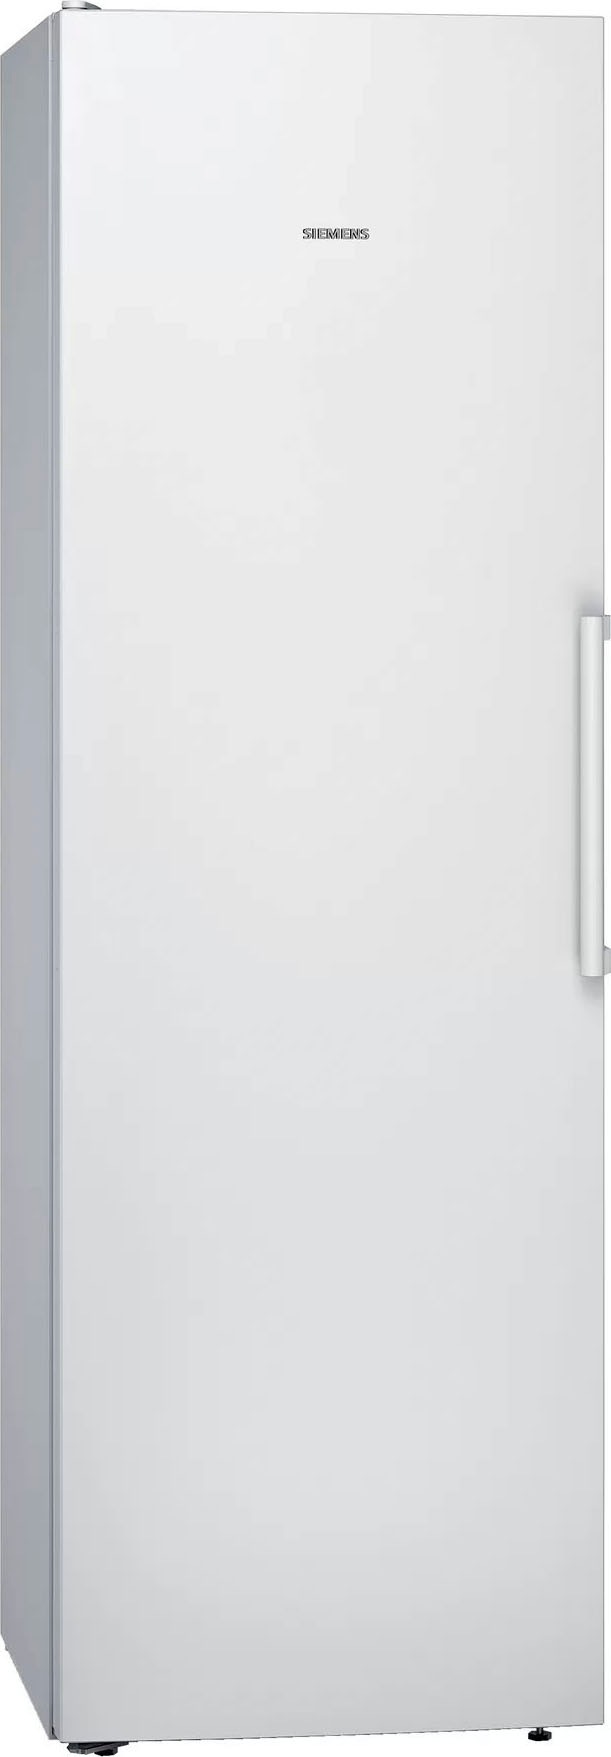 SIEMENS Kühlschrank "KS36VV", KS36VVWEP, 186 cm hoch, 60 cm breit